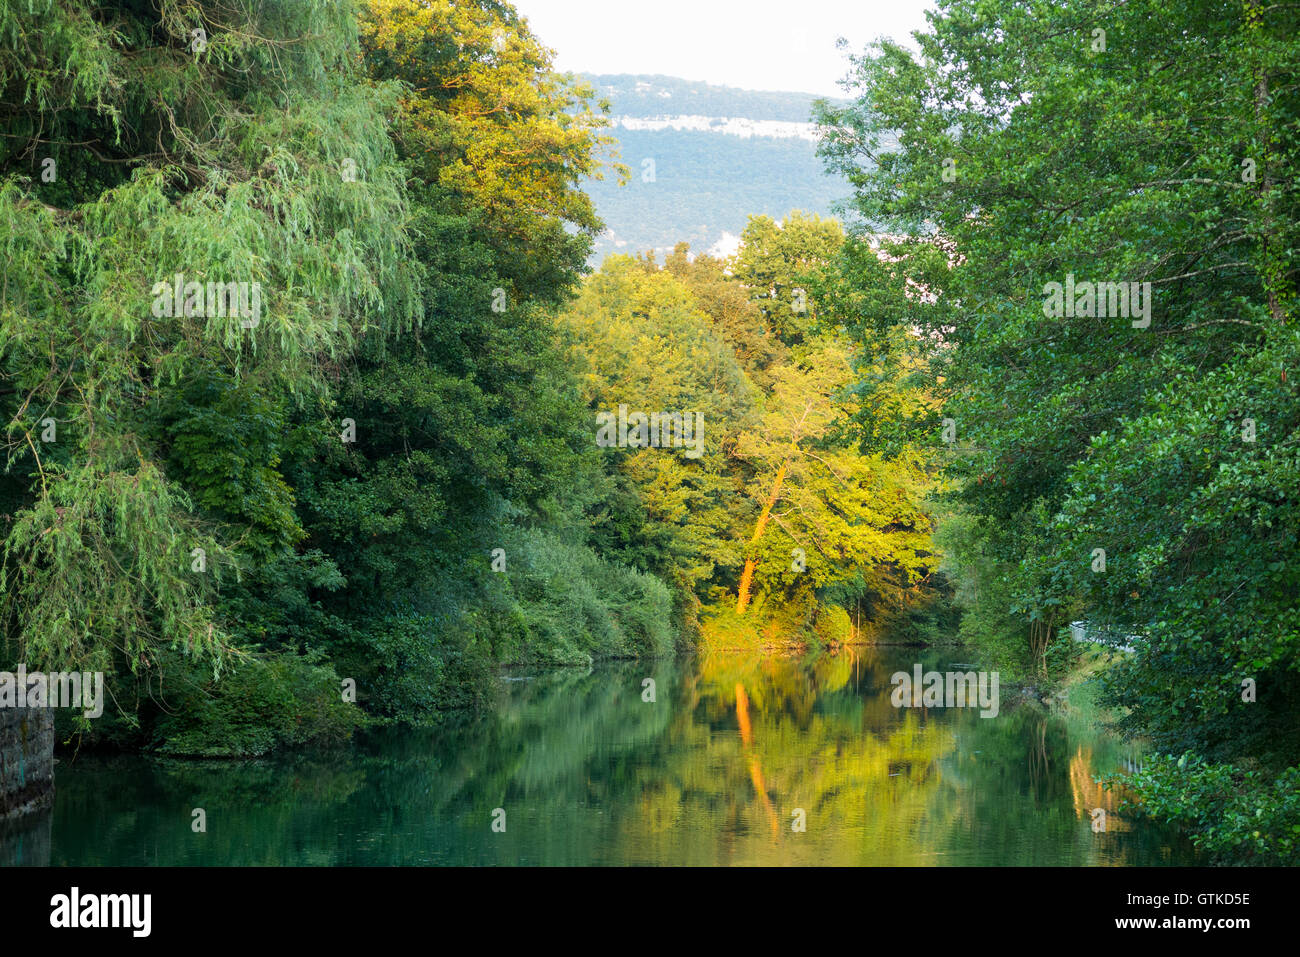 El canal de Savières a finales de agosto / verano / principios de otoño. Es un canal en el sudeste de Francia; se une a Lac du Bourget a R. Rhône Foto de stock